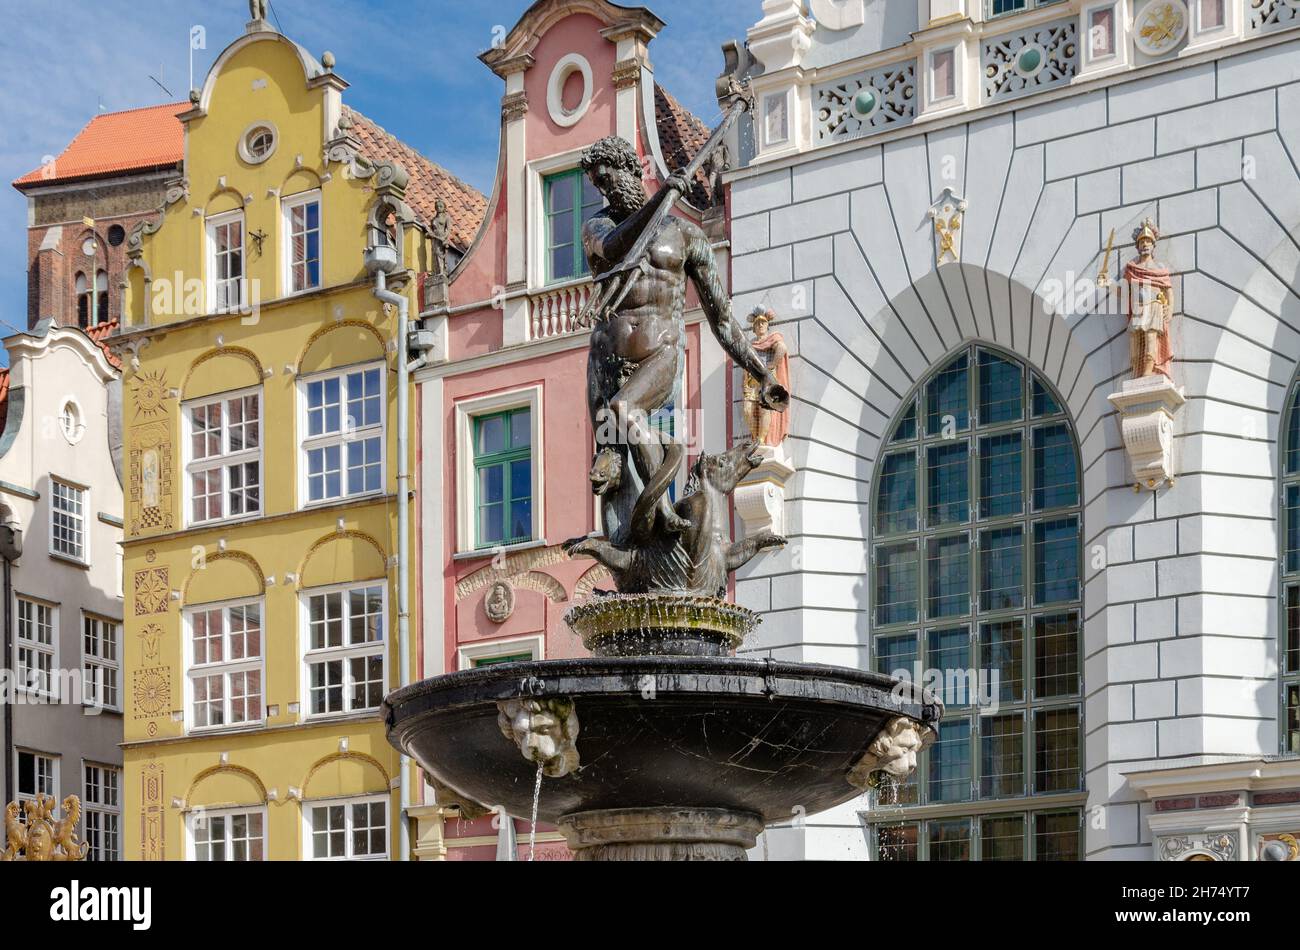 Gdansk, pomorskie voivodship, Poland; August 15th, 2021: Gansk landmark : Neptune with trident founain in Dlugi Targ square Stock Photo